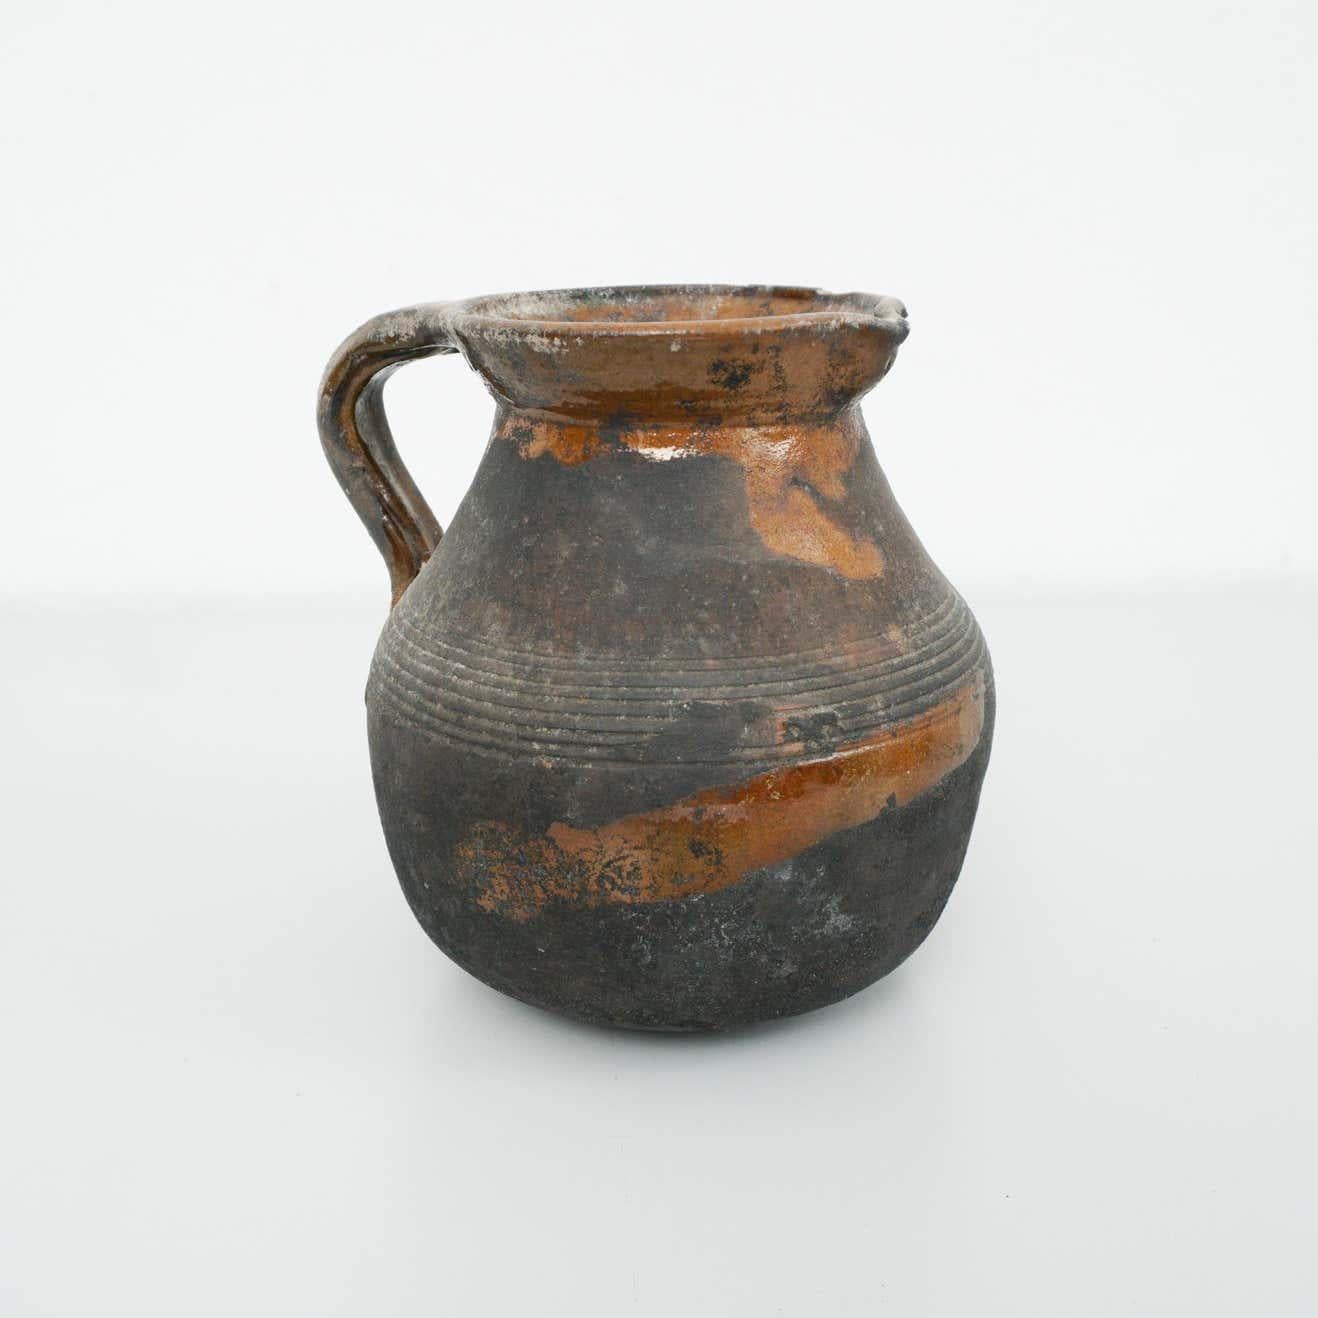 Début du 20e siècle Vase en céramique traditionnelle espagnole
Par un fabricant inconnu, Espagne.

En état d'origine avec une usure mineure liée à l'âge et à l'utilisation, préservant une belle patine.